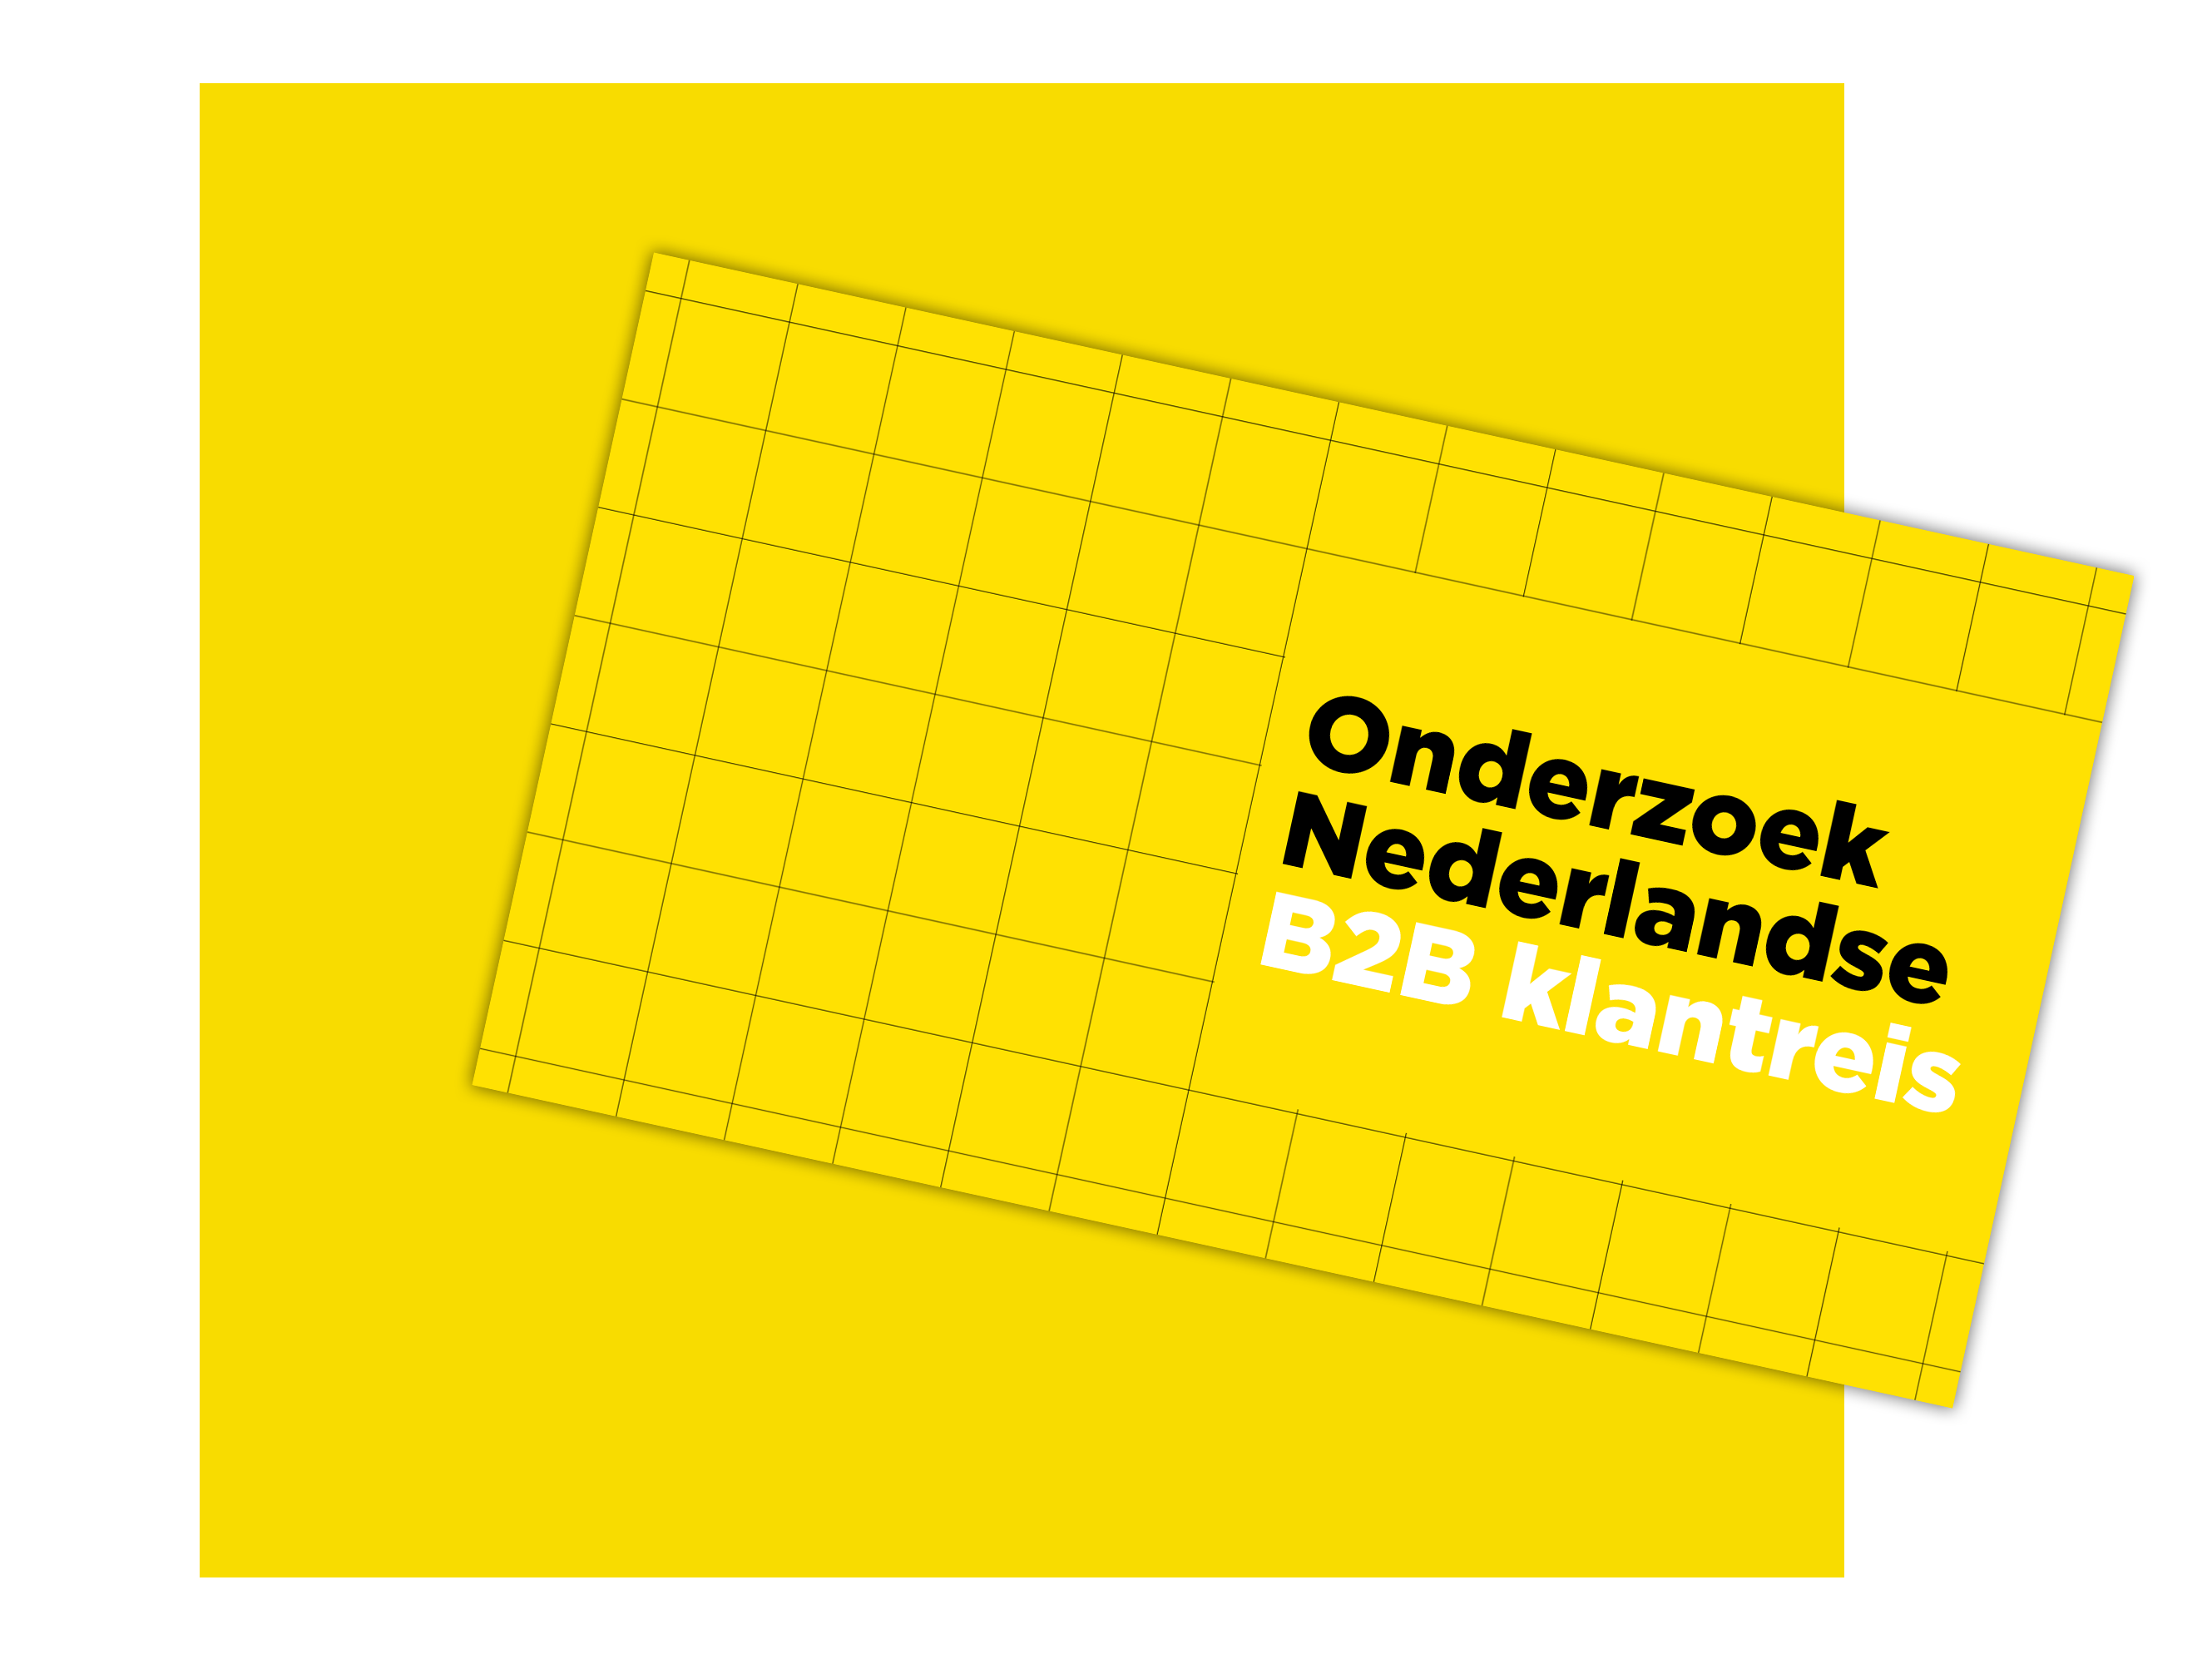 Download | Onderzoek Nederlandse B2B Klantreis